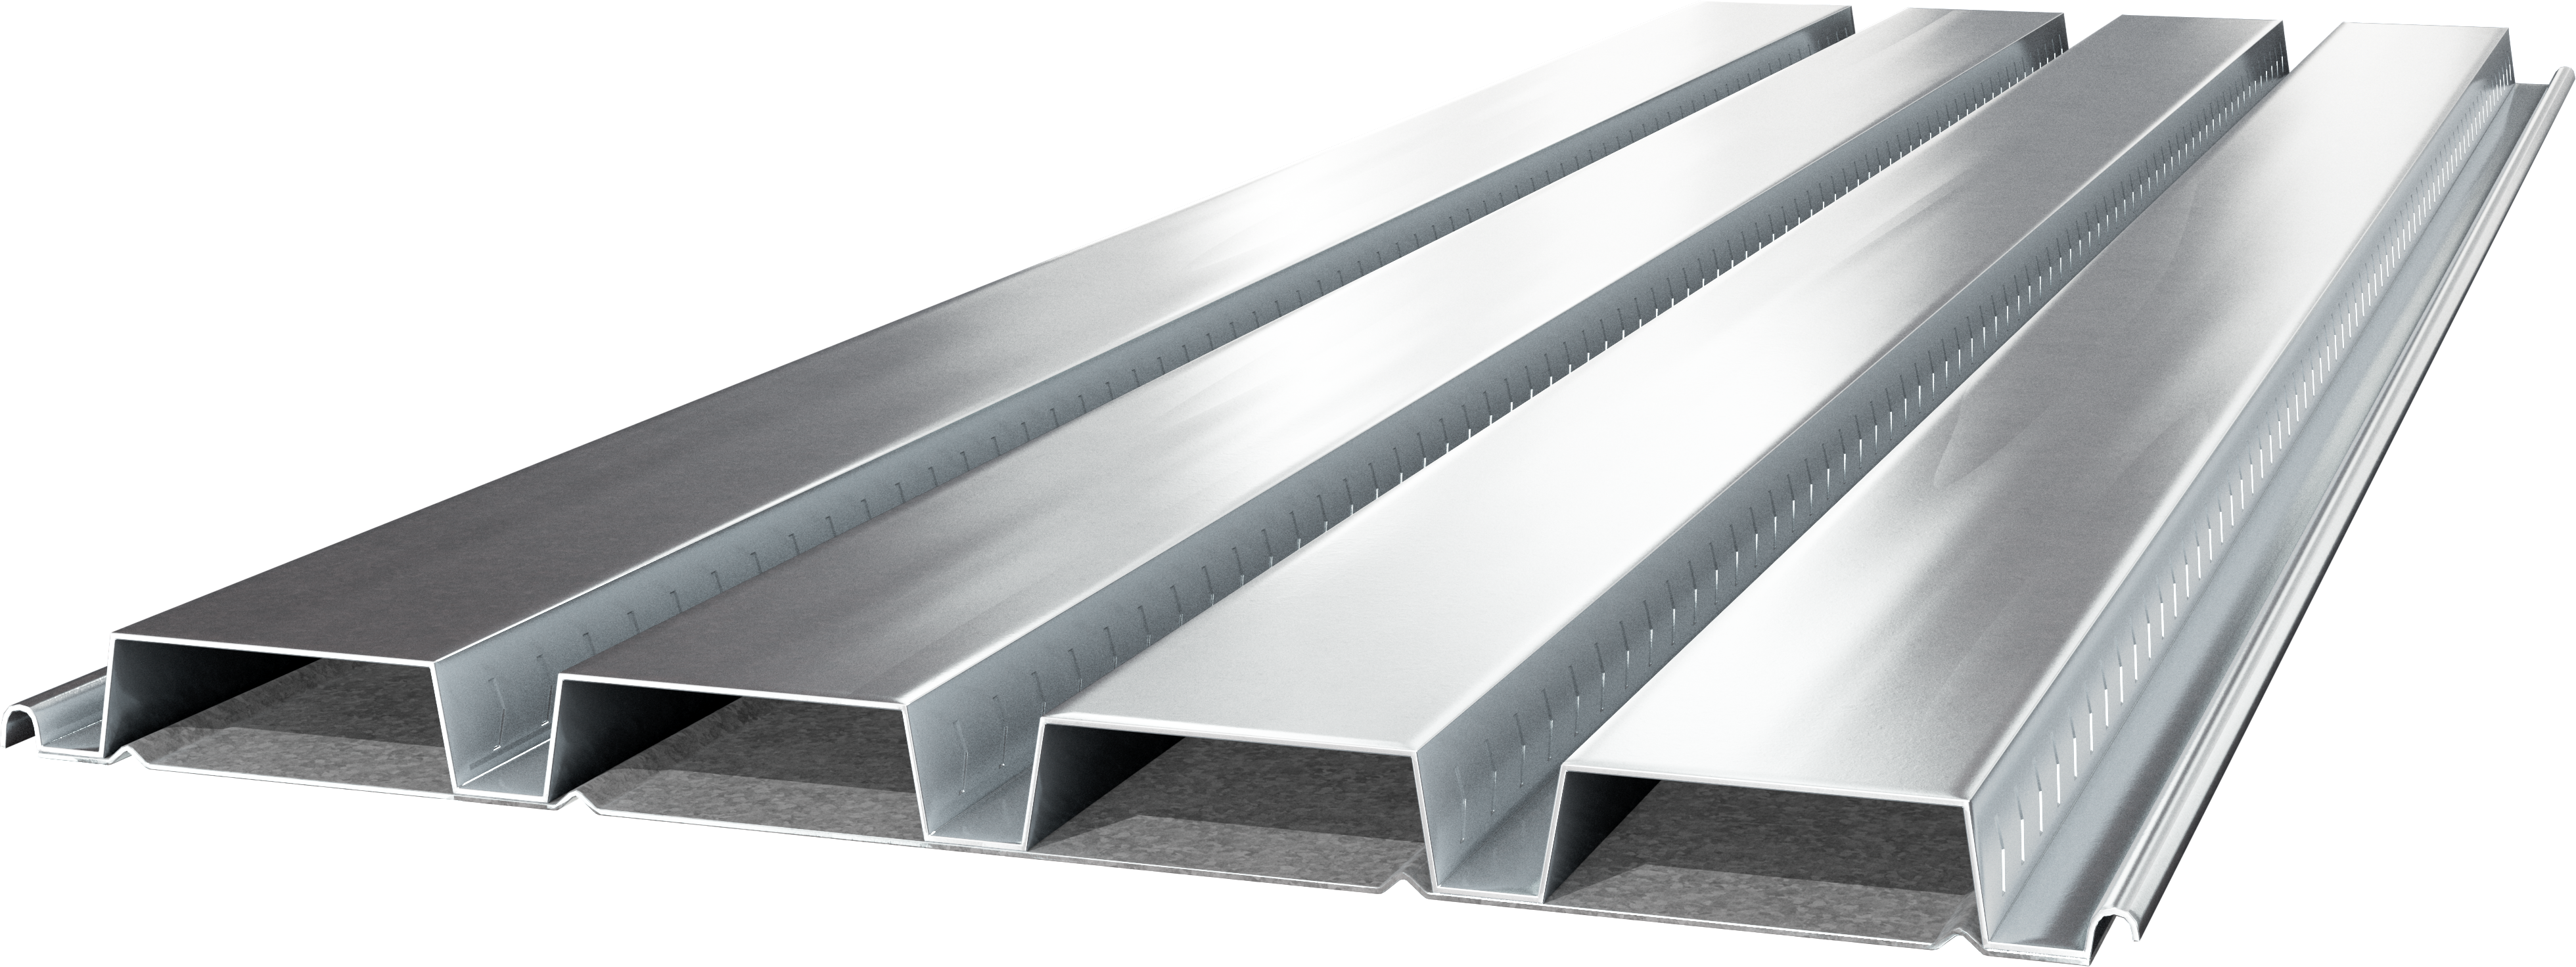 Cordeck Cellular Composite Metal Floor Deck Products